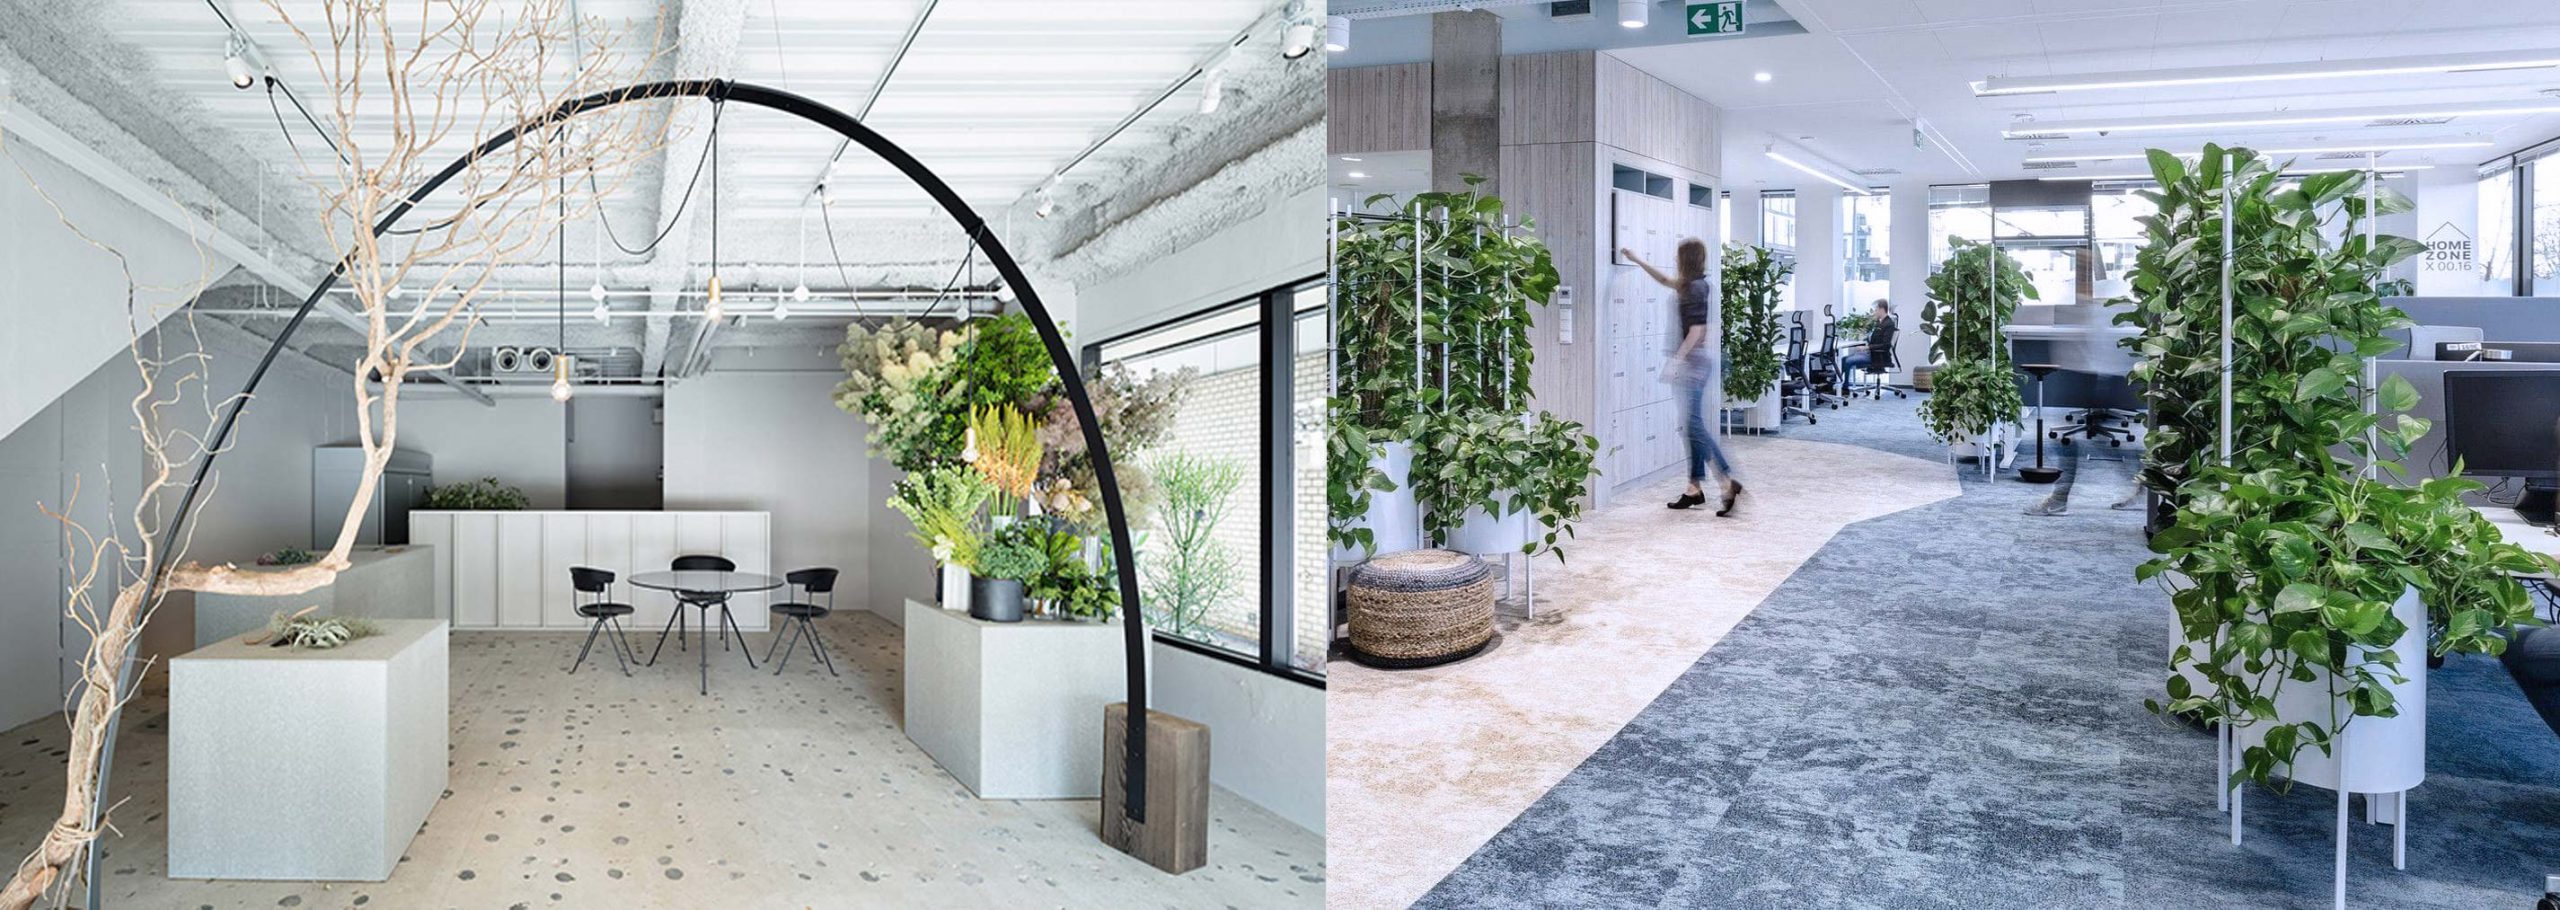 4- کاربرد و استفاده - گیاهان آپارتمانی - تجهیزات دکوراسیون - indoor plants - office plants - استفاده از گیاهان آپارتمانی - آبیاری گیاهان آپارتمانی اداری